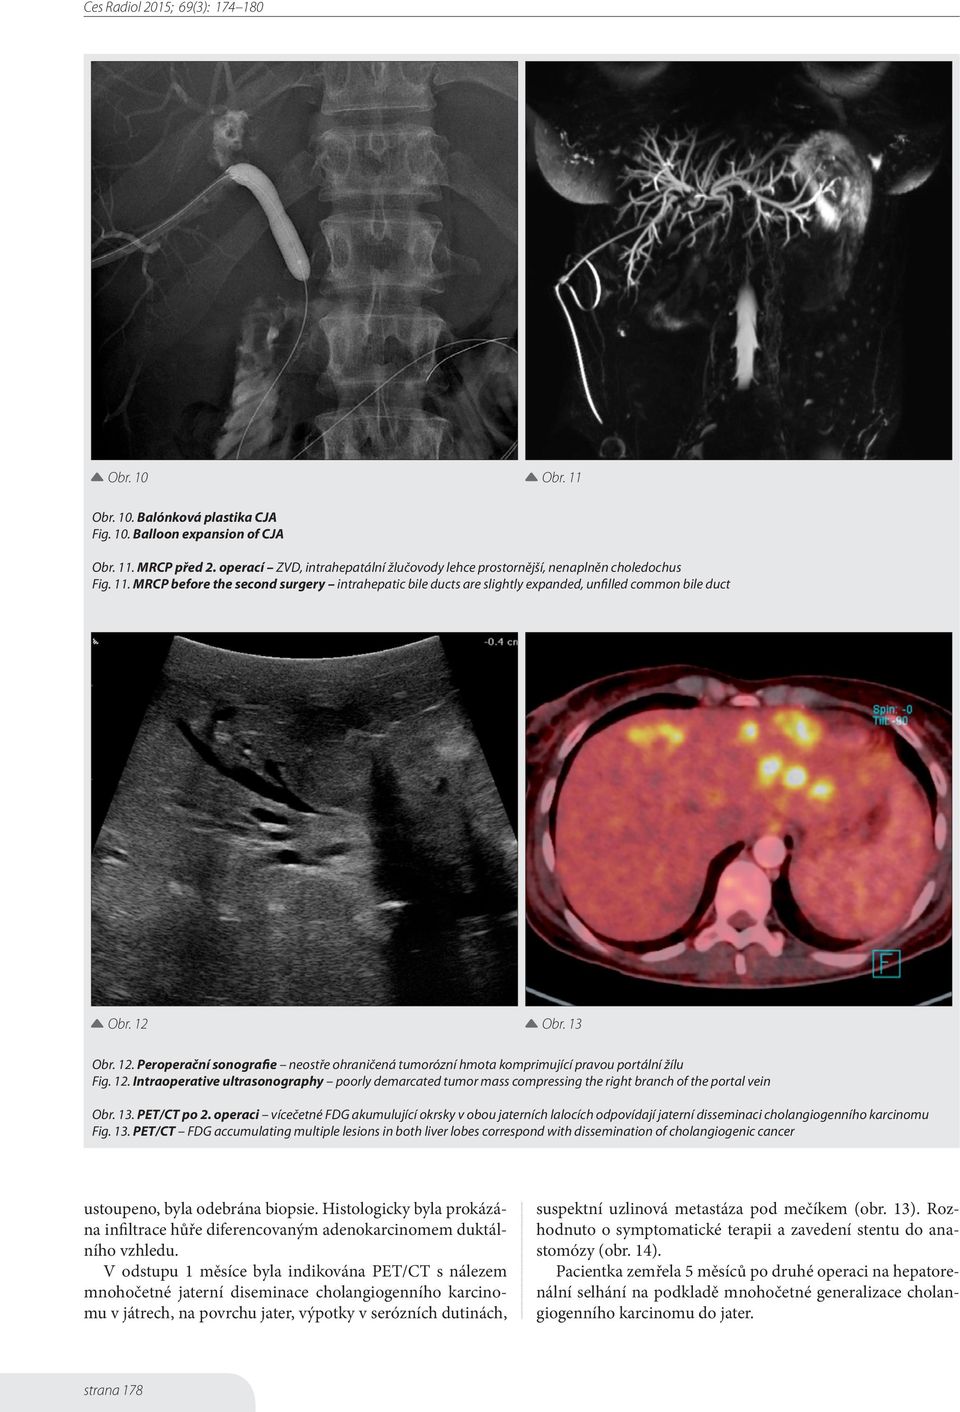 13. PET/CT po 2. operaci vícečetné FDG akumulující okrsky v obou jaterních lalocích odpovídají jaterní disseminaci cholangiogenního karcinomu Fig. 13.